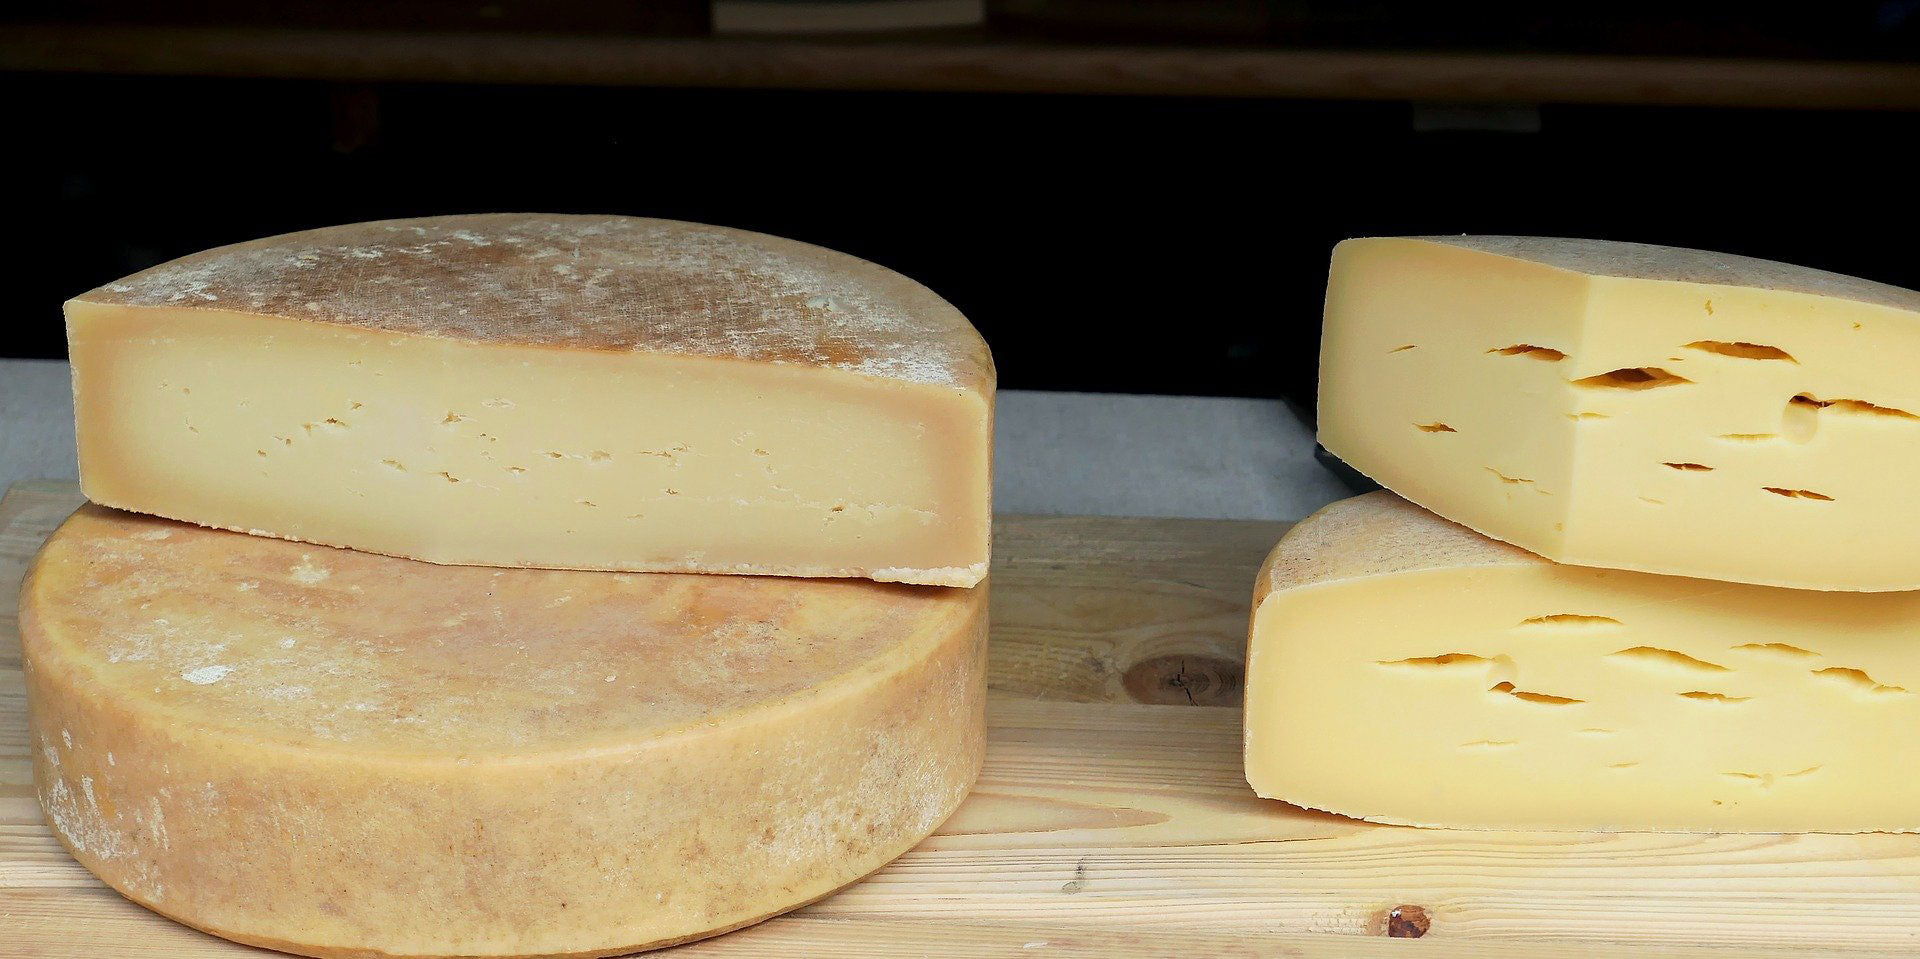 Quelle est la température idéale pour garder le fromage frais